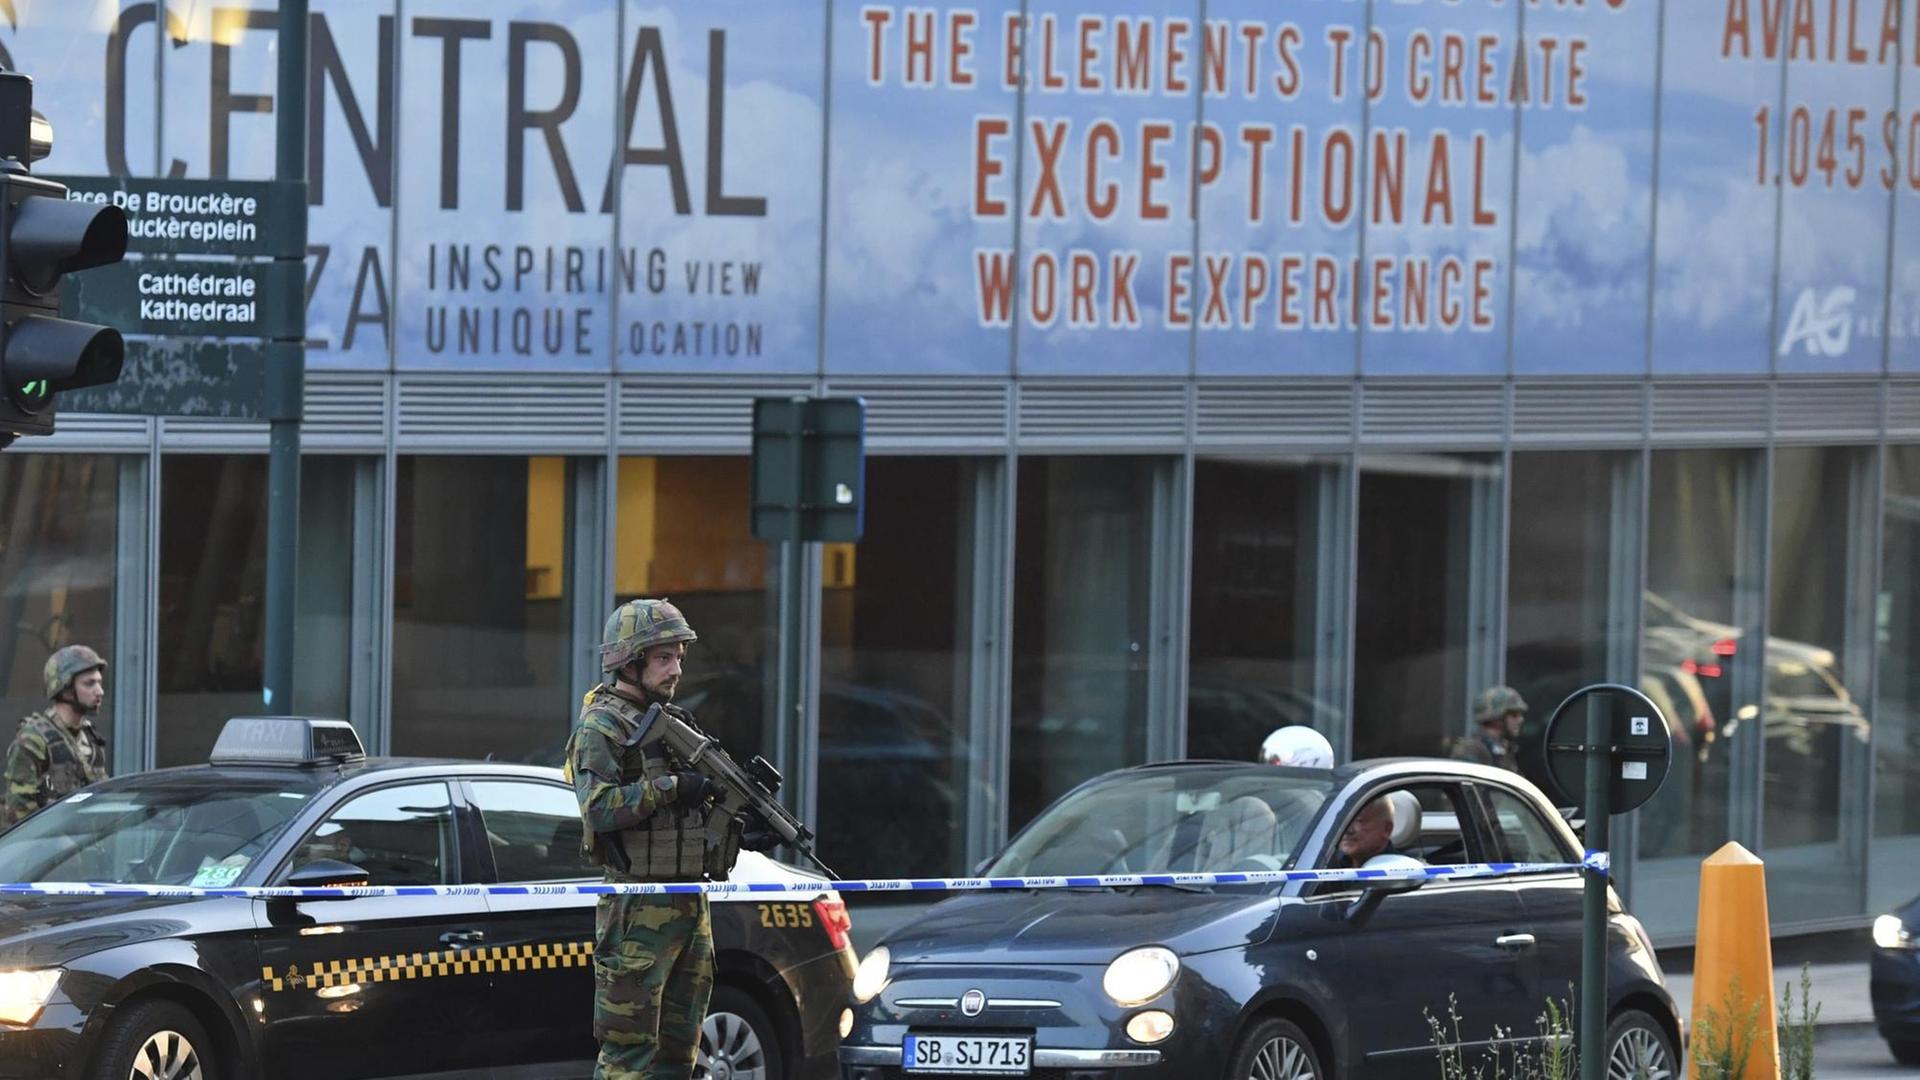 Soldaten patrouillieren vor dem Bahnhof Central in Brüssel.